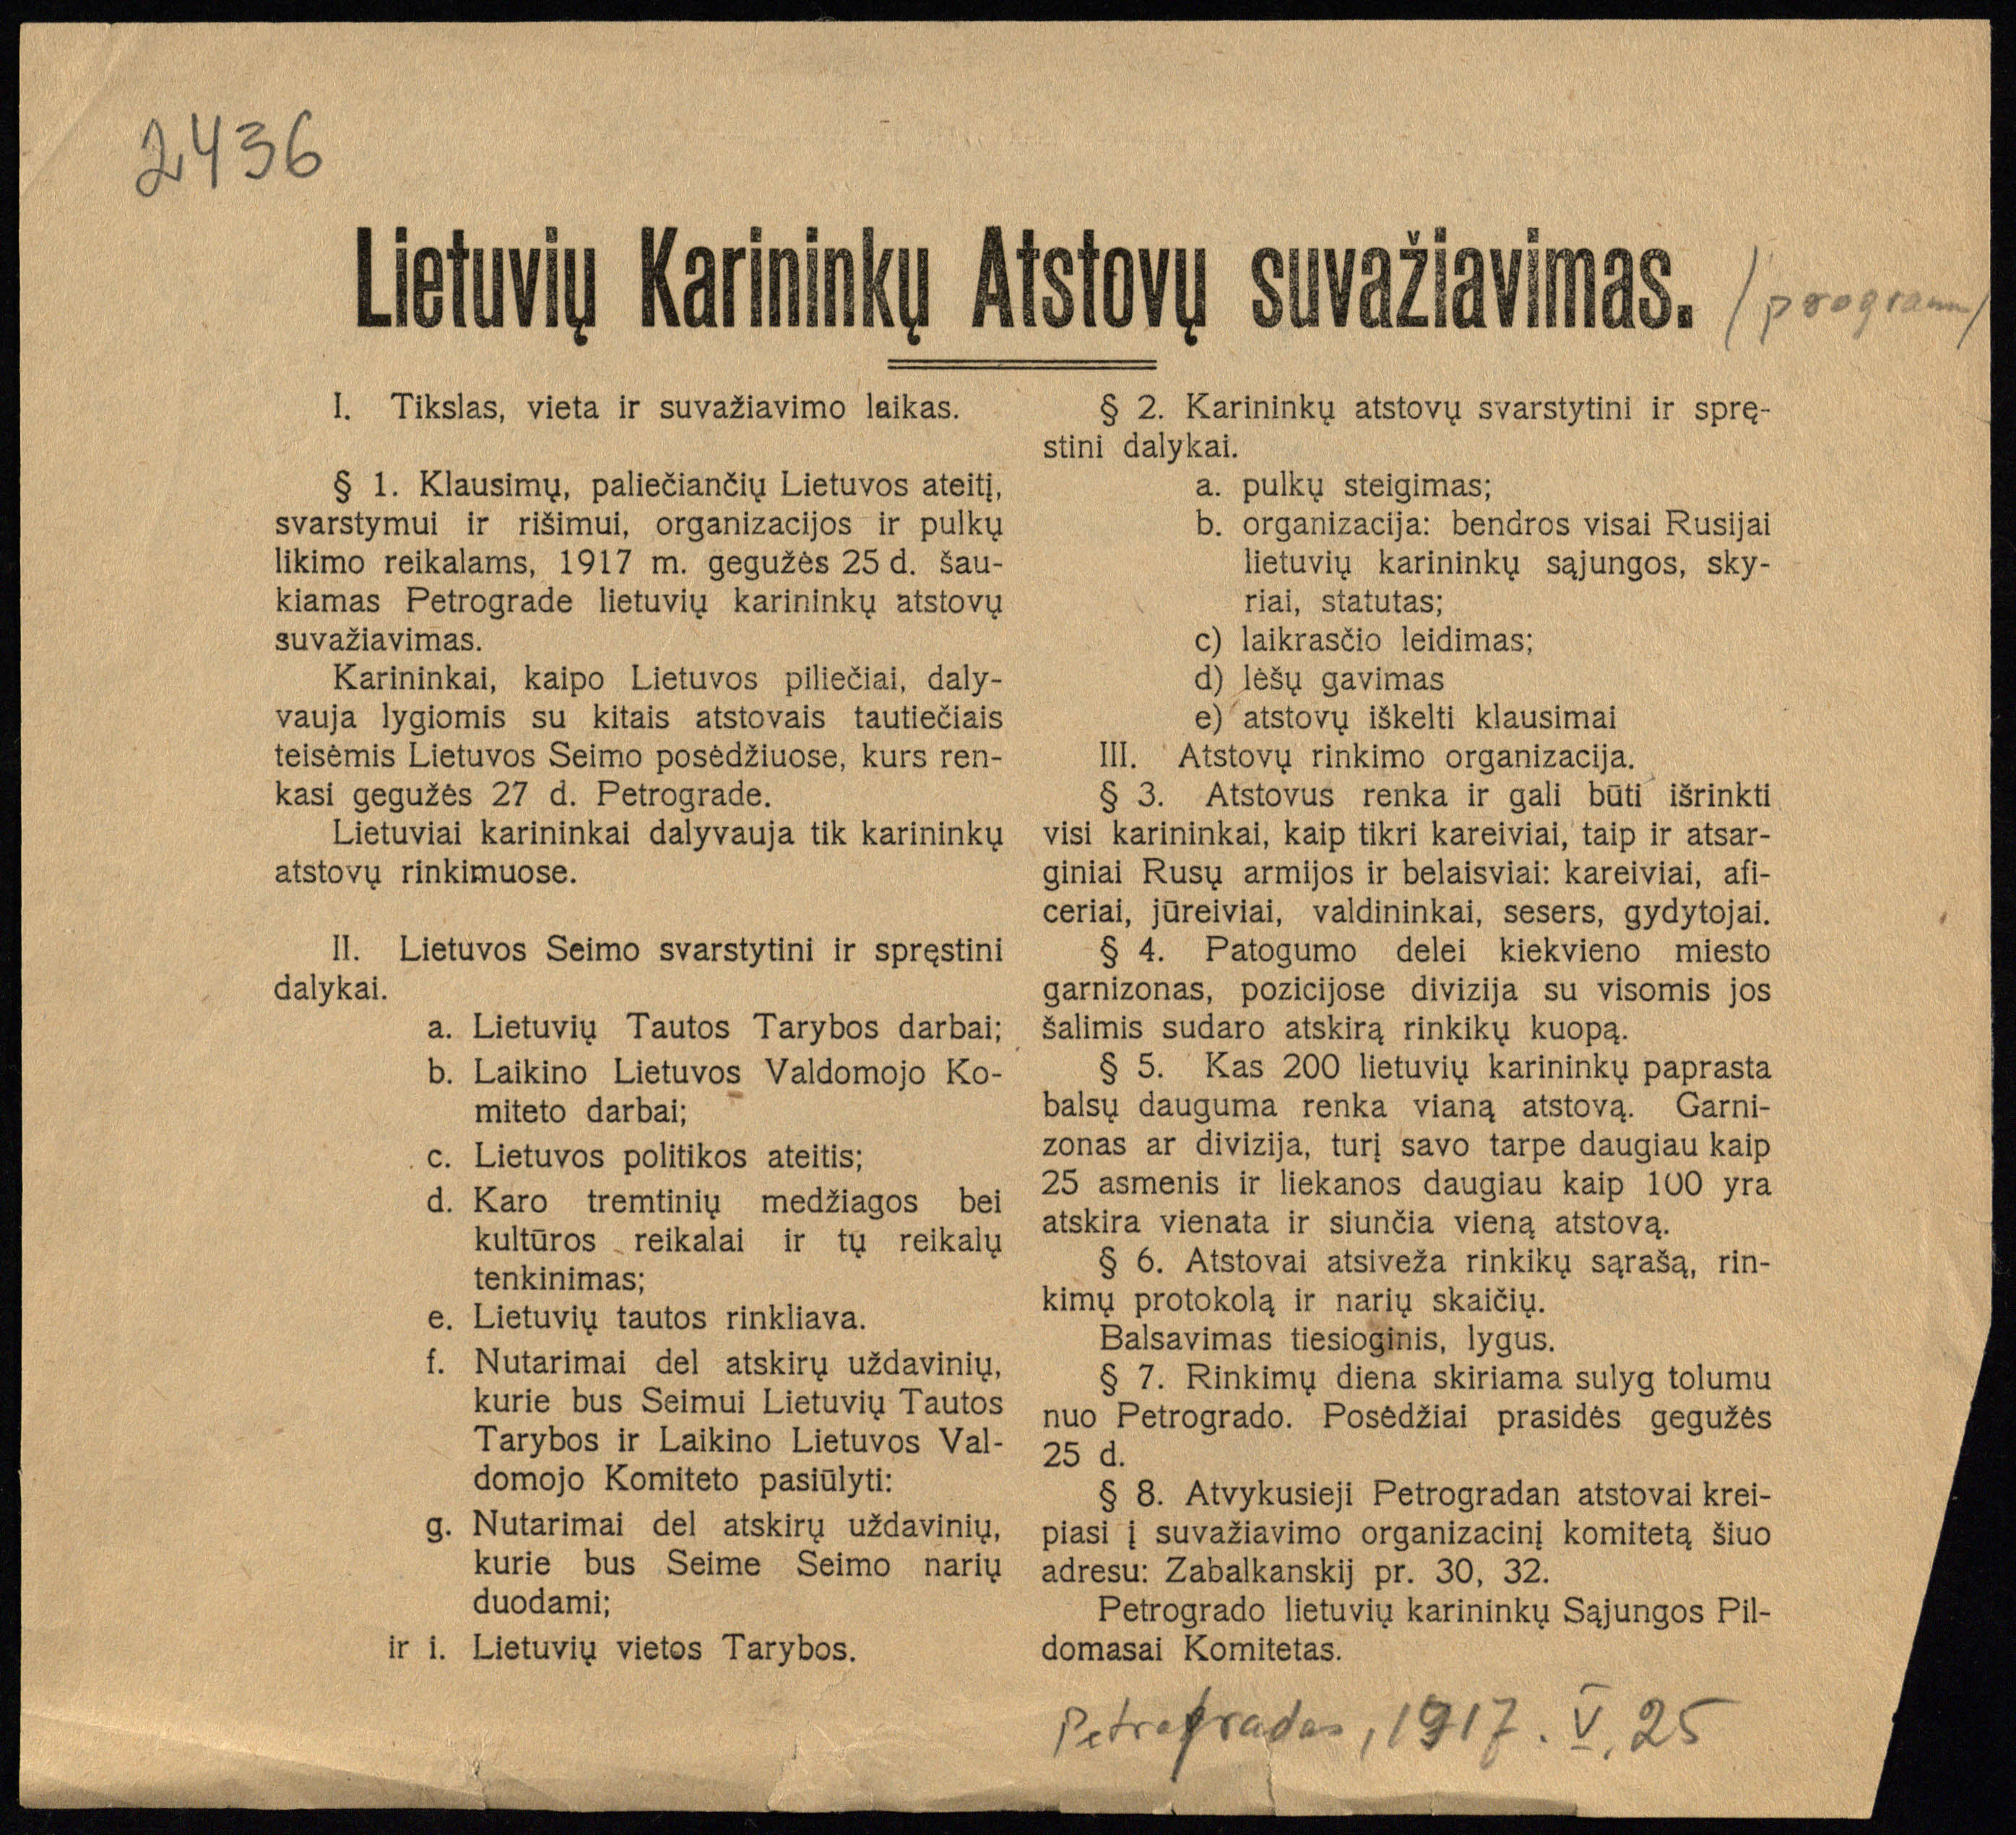 Petrogrado lietuvių karininkų (karininkais tuo metu vadinami visi kariai – R. S.) sąjungos Vykdomojo komiteto atsišaukimas dėl 1917 m. rugsėjo 25 d. rengiamo pirmojo lietuvių karių suvažiavimo